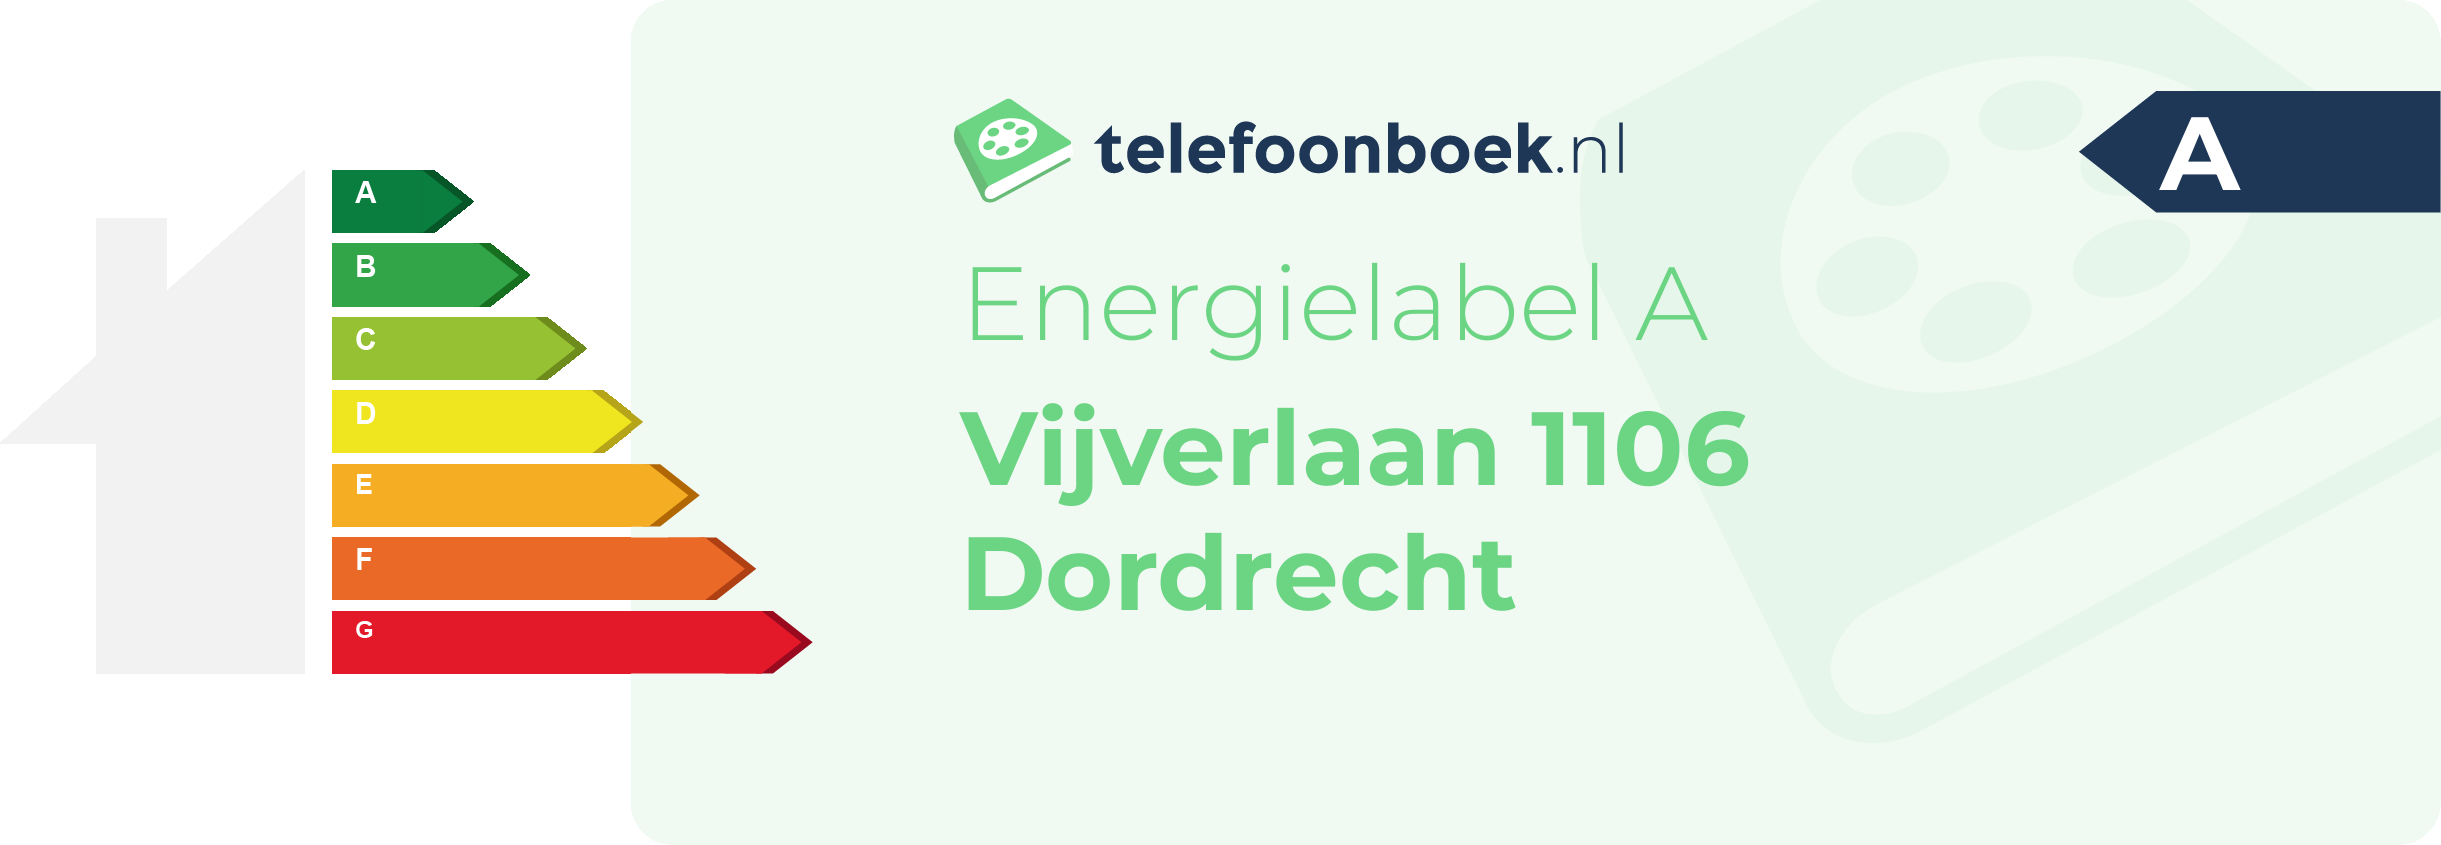 Energielabel Vijverlaan 1106 Dordrecht